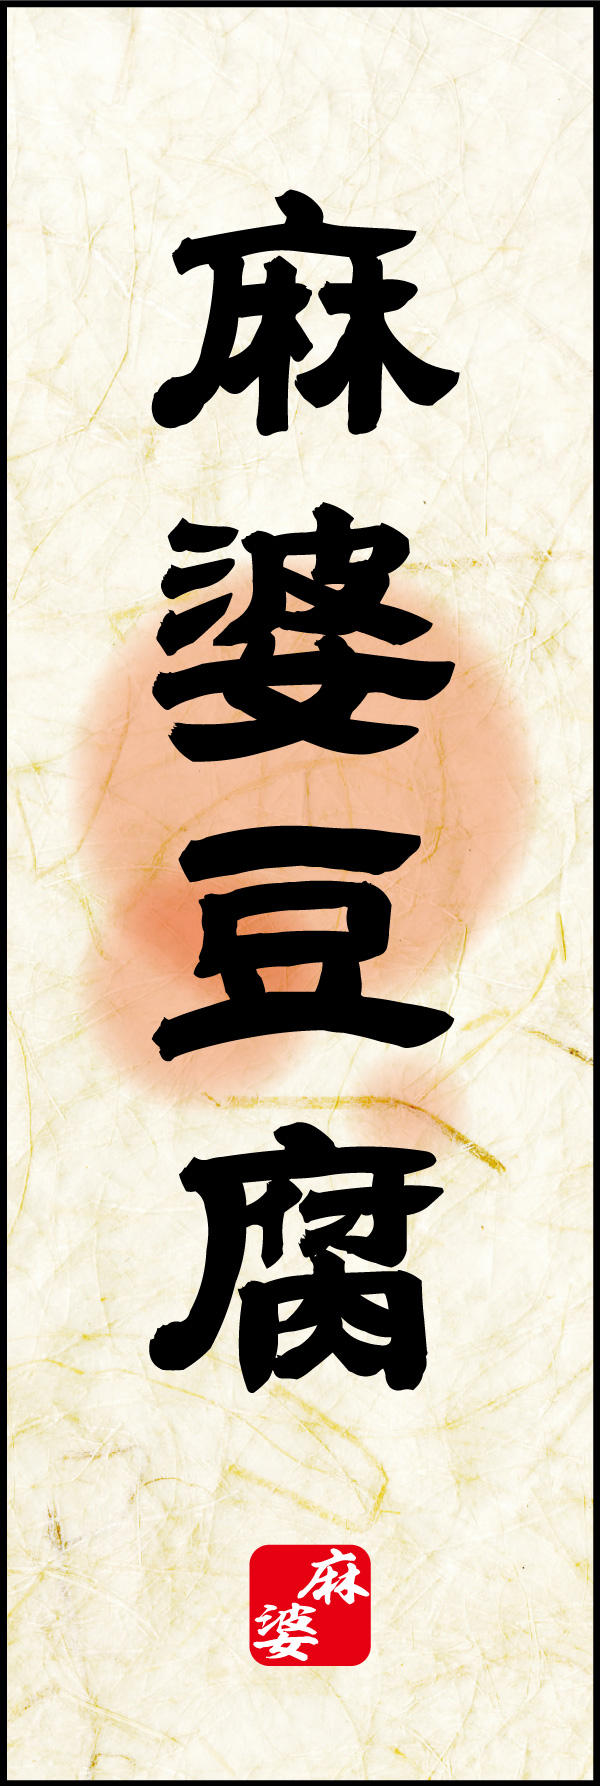 麻婆豆腐 02「麻婆豆腐」ののぼりです。麻婆豆腐のイメージを素朴な風合いで表現してみました。(Y.M) 